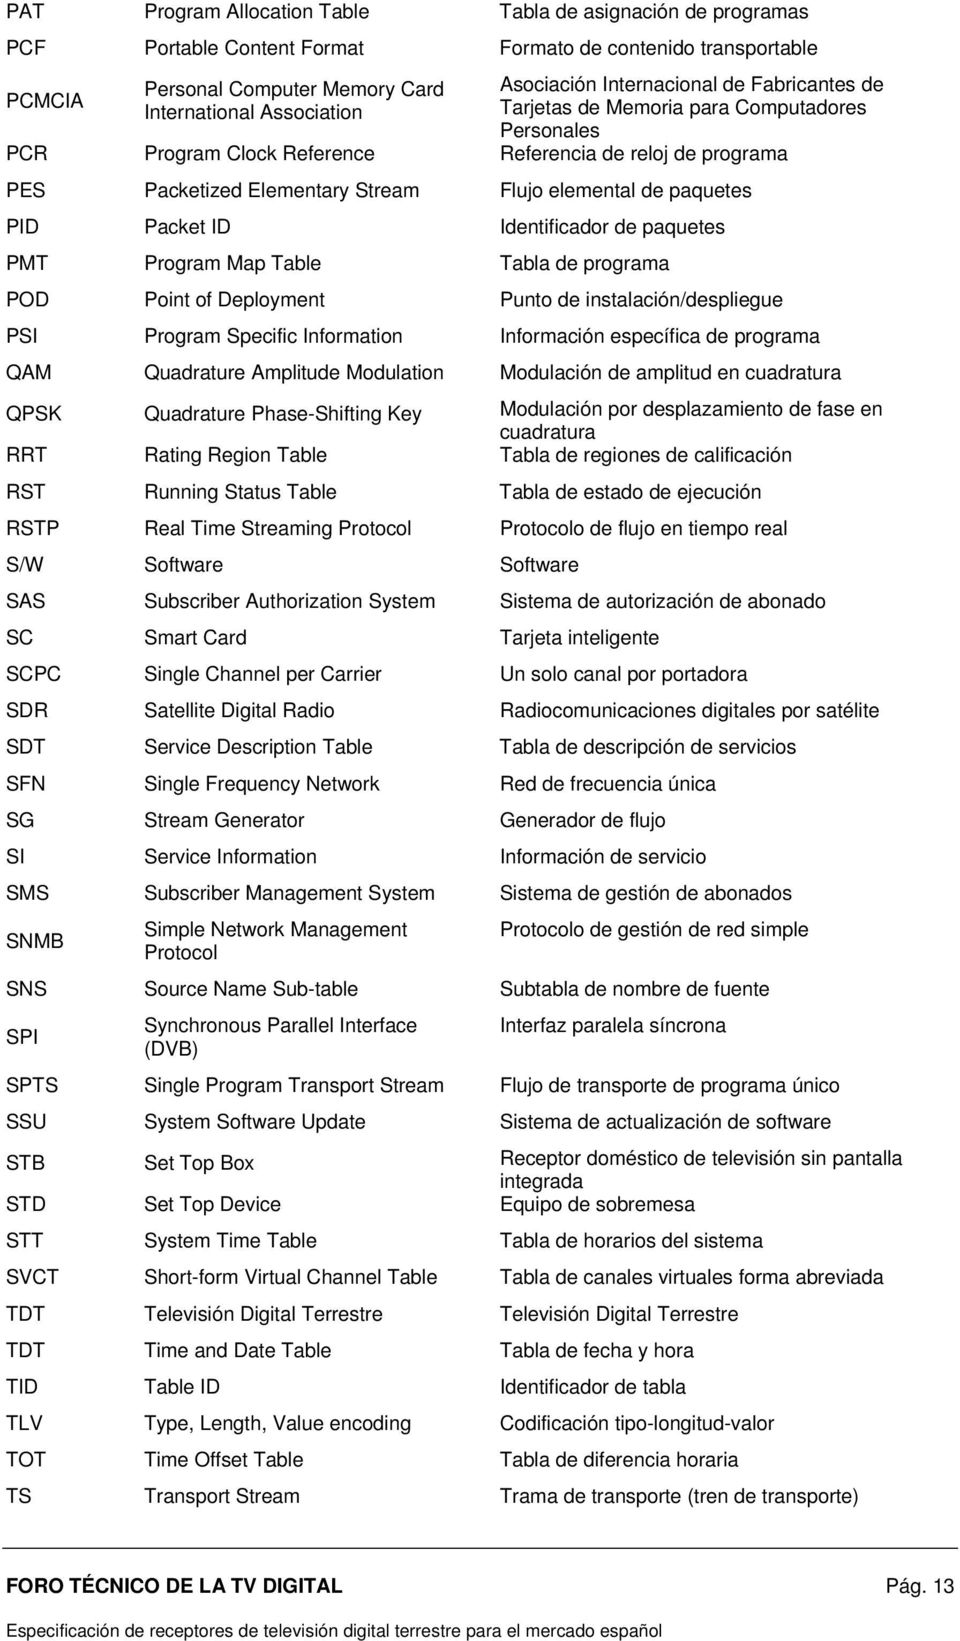 paquetes PID Packet ID Identificador de paquetes PMT Program Map Table Tabla de programa POD Point of Deployment Punto de instalación/despliegue PSI Program Specific Information Información